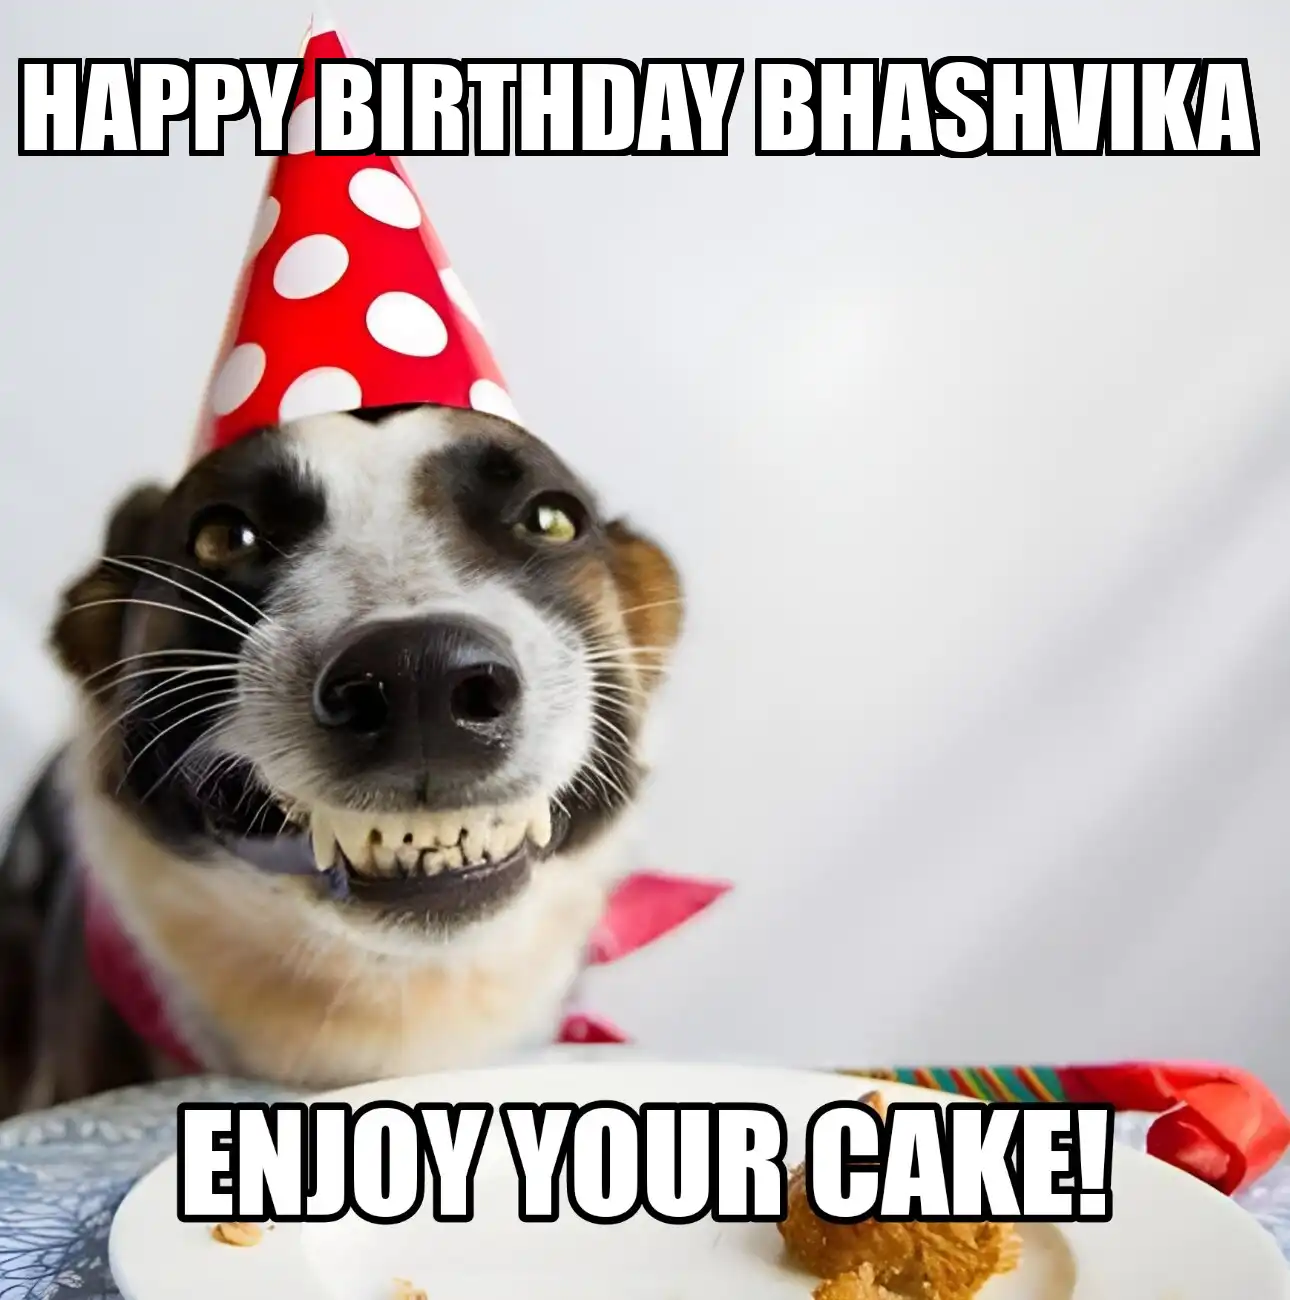 Happy Birthday Bhashvika Enjoy Your Cake Dog Meme